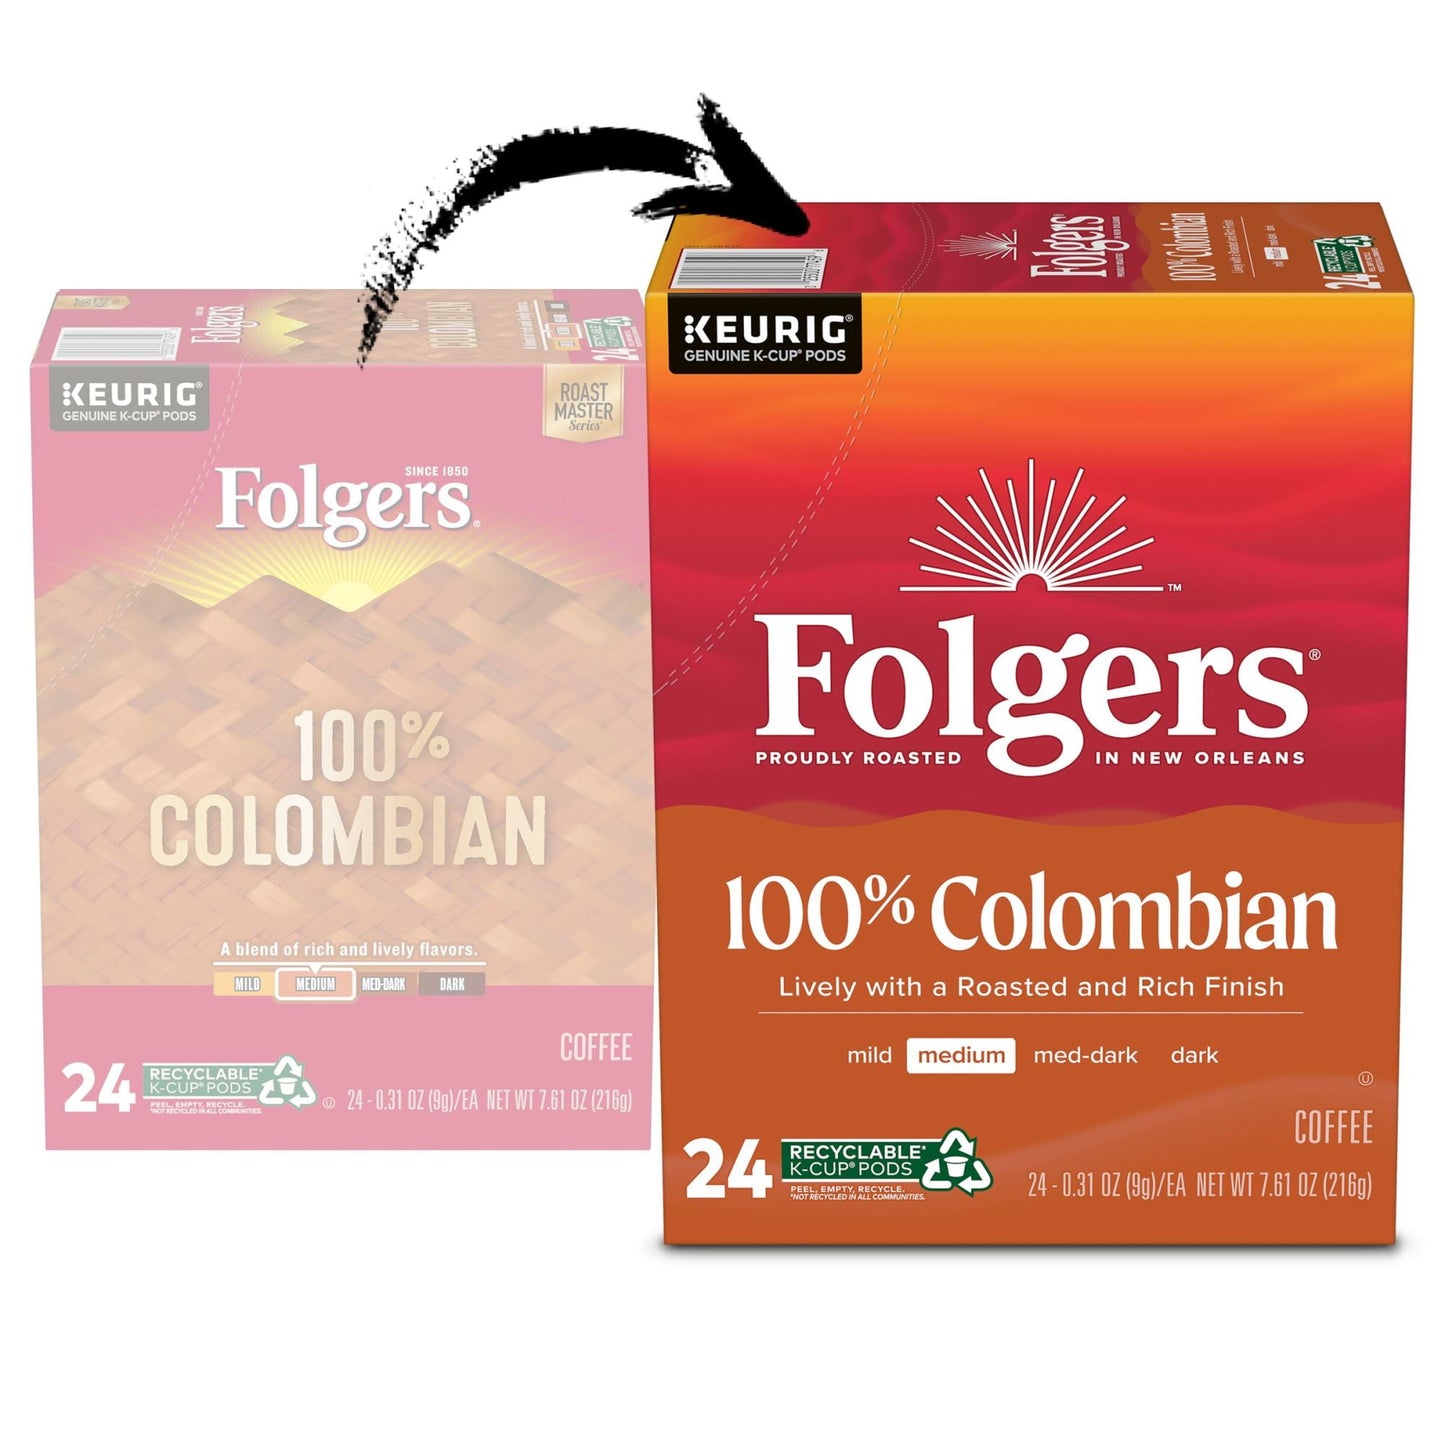 Folgers Colombian Coffee, Medium Roast, Keurig K-Cup Brewers, 24 Count Box